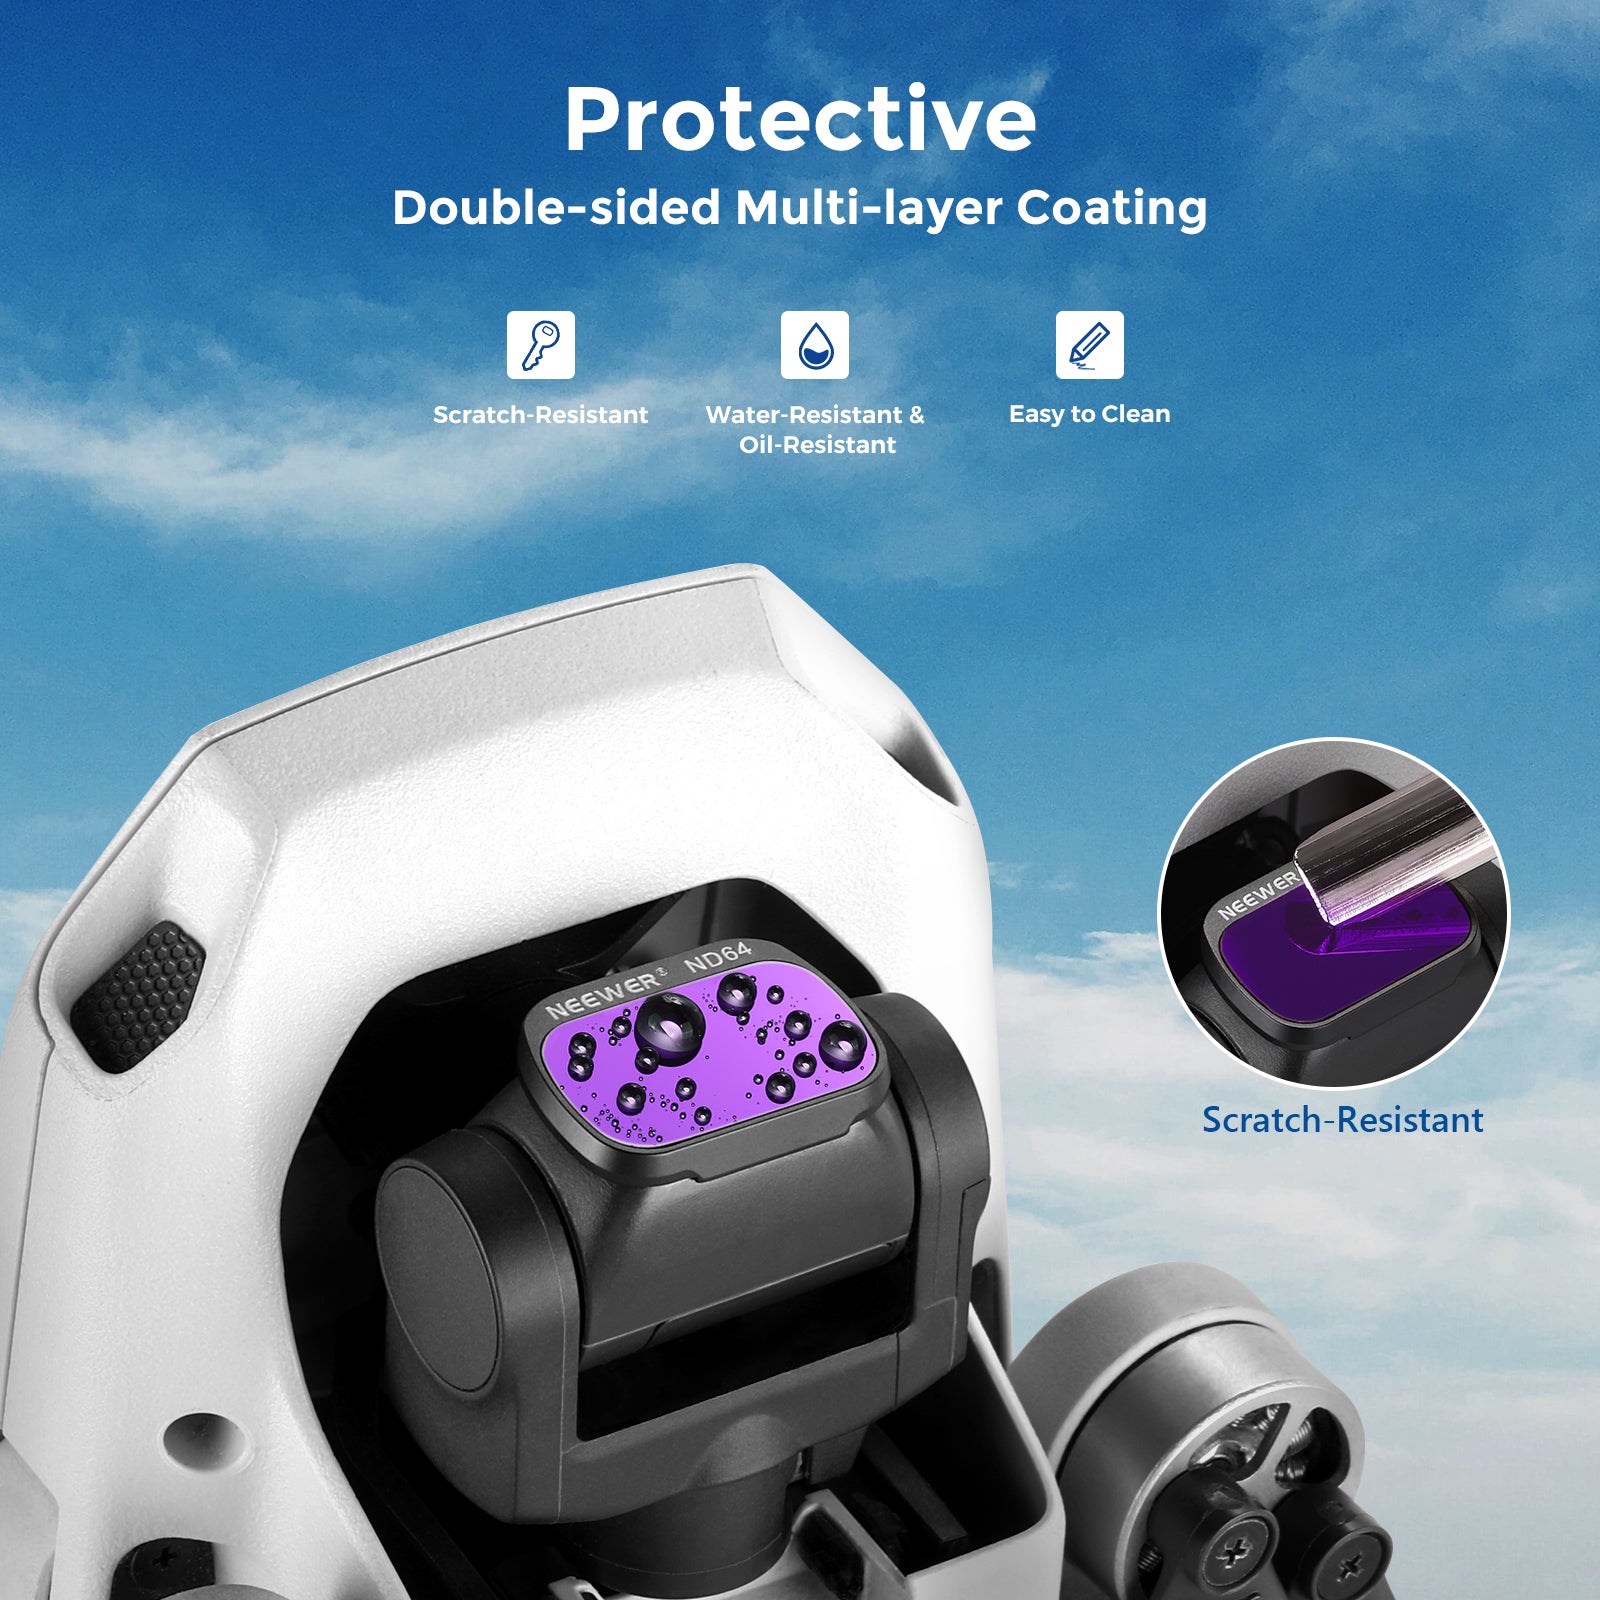 Aries ND Filters Set for DJI Mavic Mini/Mini 2 Drone, 6-Pack AR-DM2FK